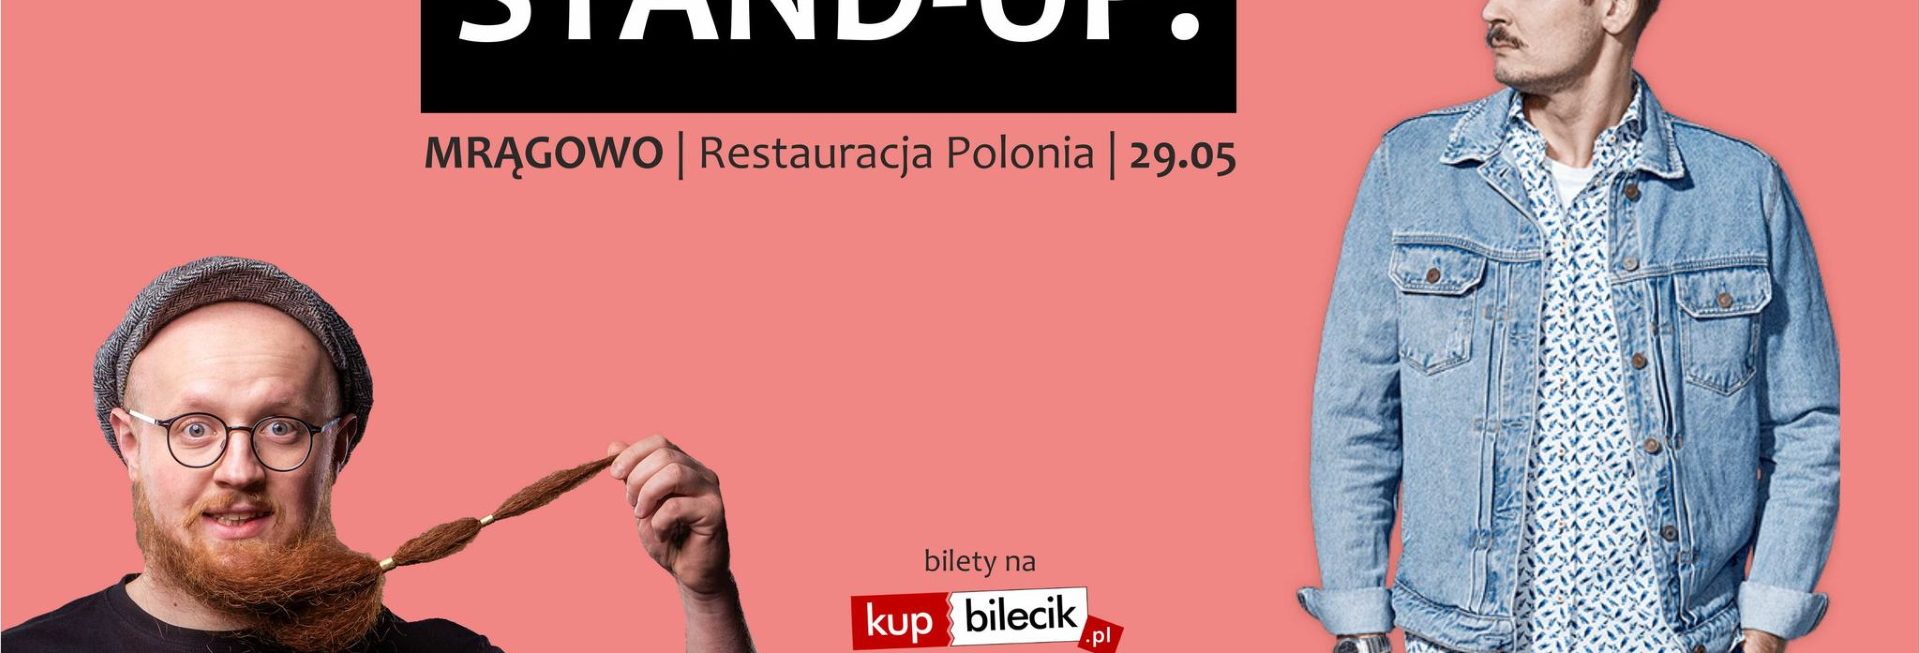 Plakat graficzny zapraszający do Mrągowa na występ Stand-up: Maciek Adamczyk & Arkadiusz Jaksa Jakszewicz.  